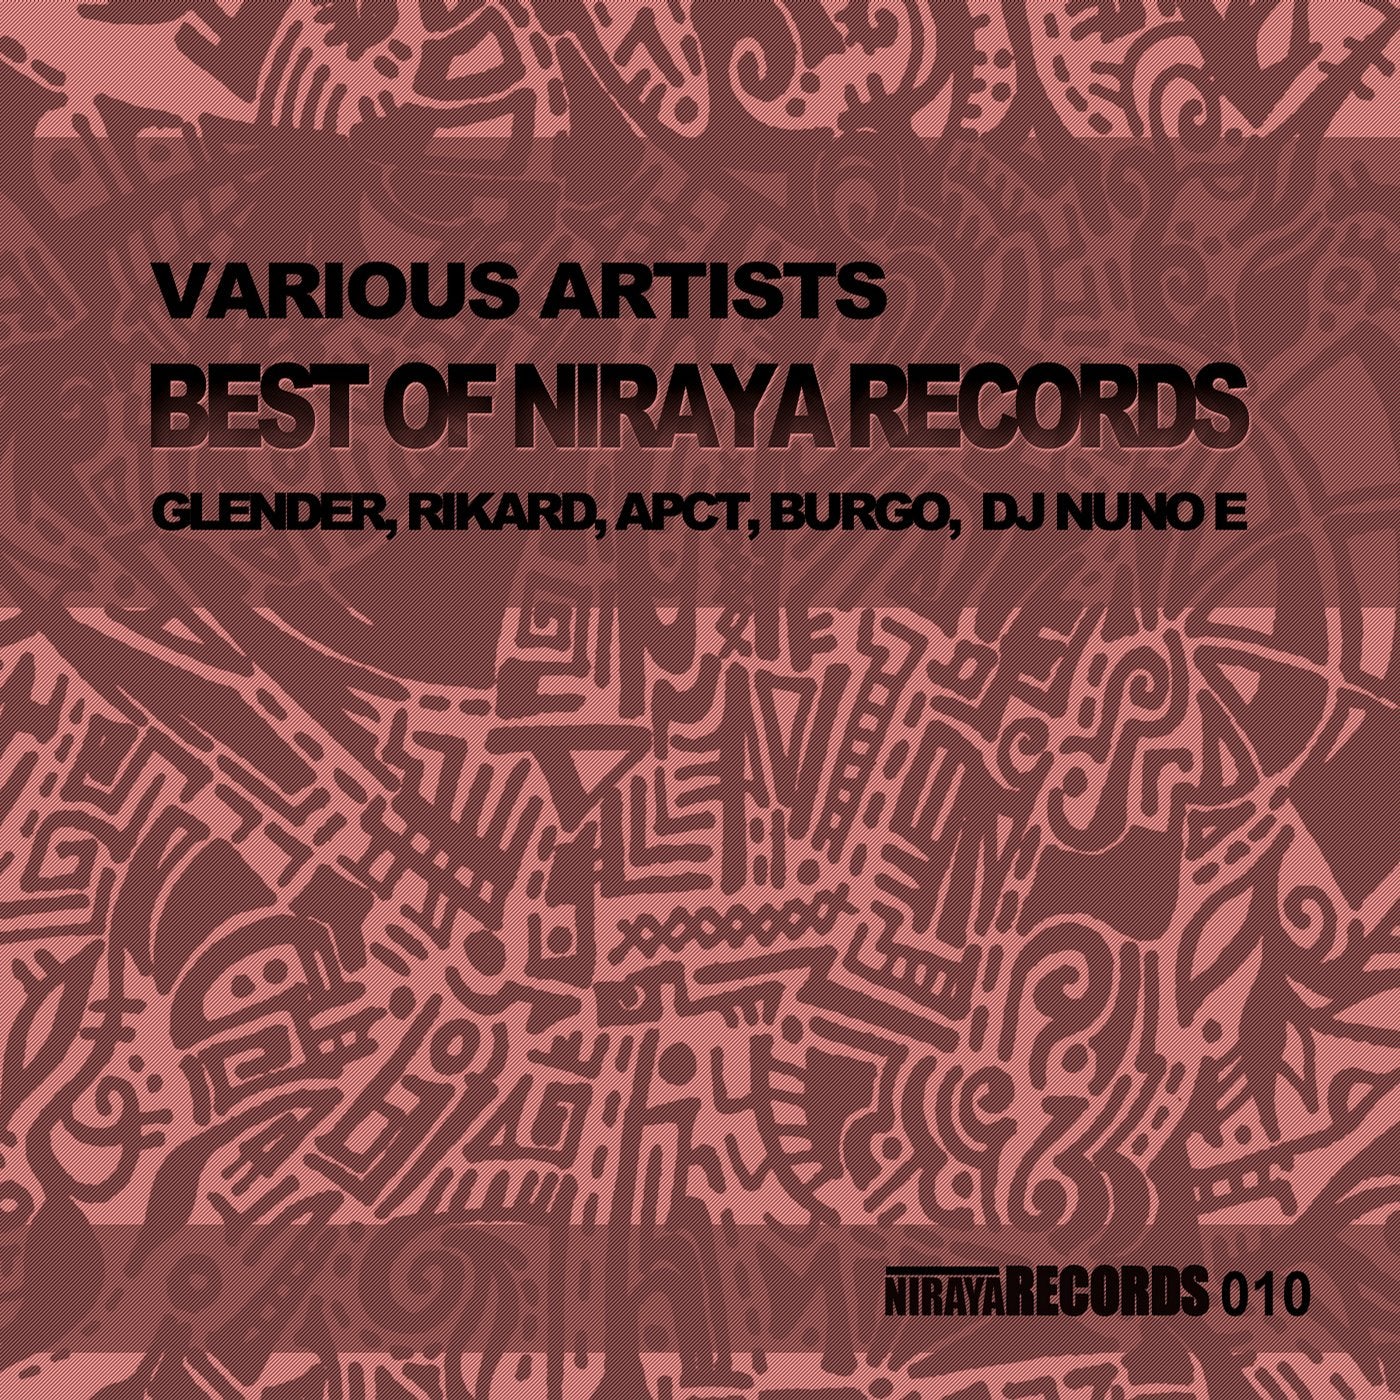 Best of Niraya Records